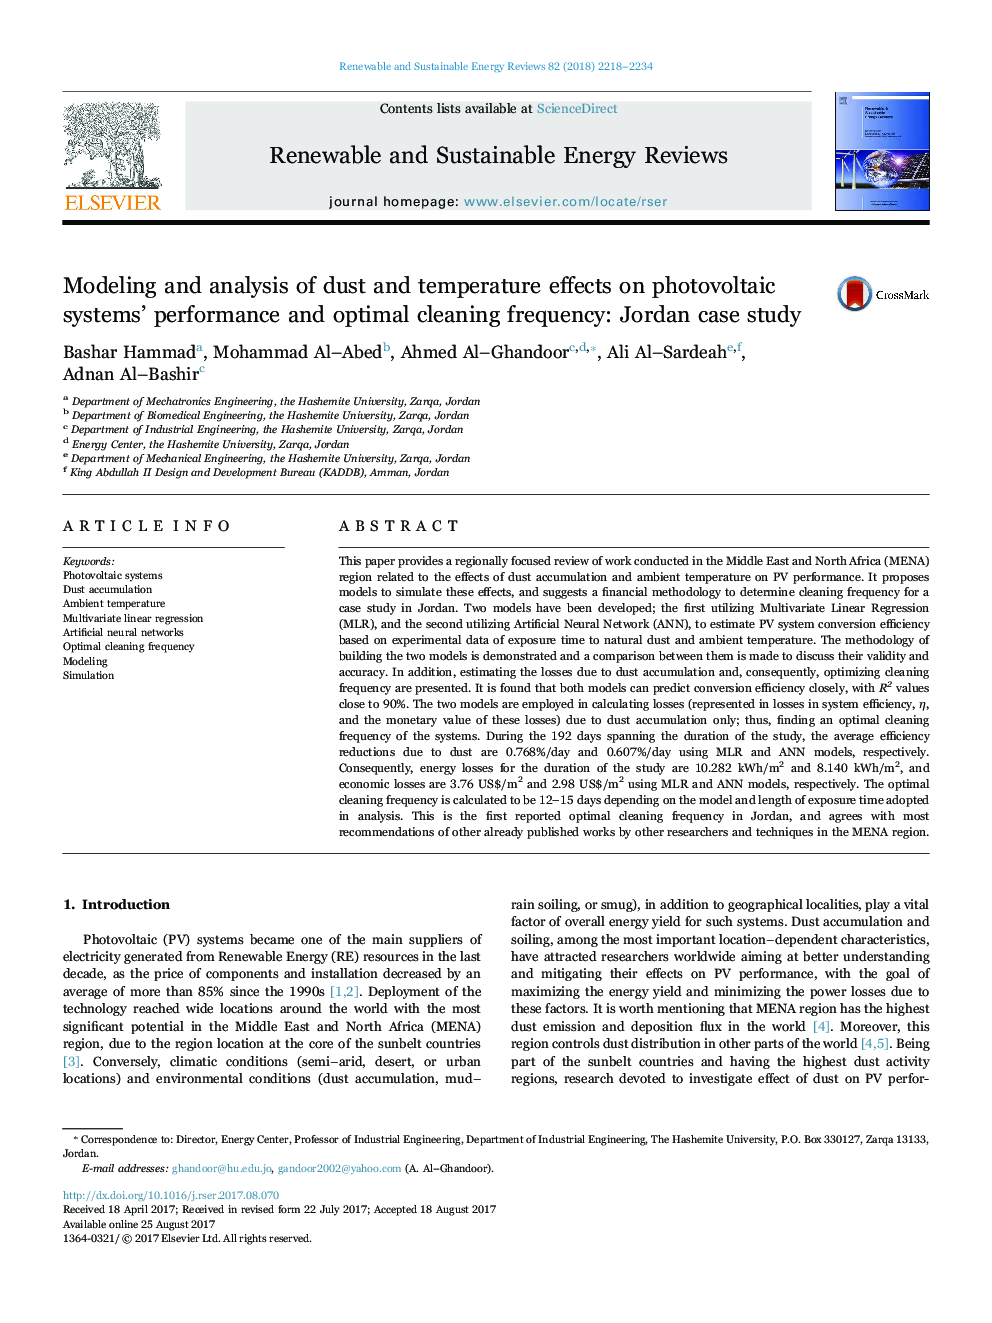 مدلسازی و تجزیه و تحلیل اثرات گرد و غبار و دما بر عملکرد سیستم های فتوولتائیک و فرآیند تمیز کردن بهینه: مطالعه موردی اردن 